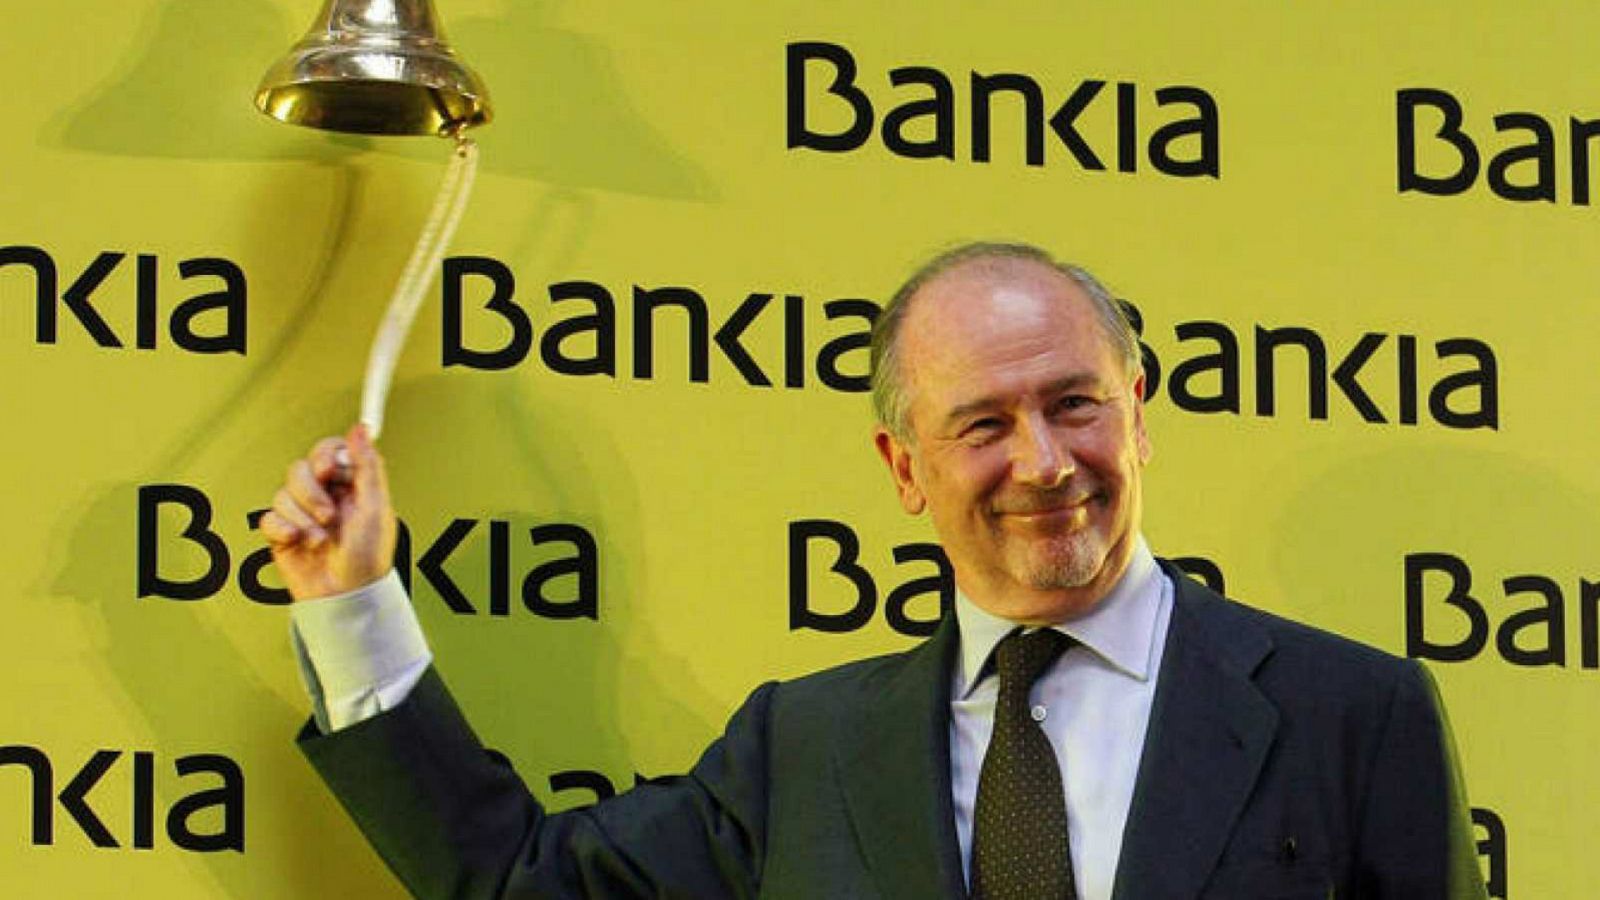 Absueltos los acusados por la salida a Bolsa de Bankia 